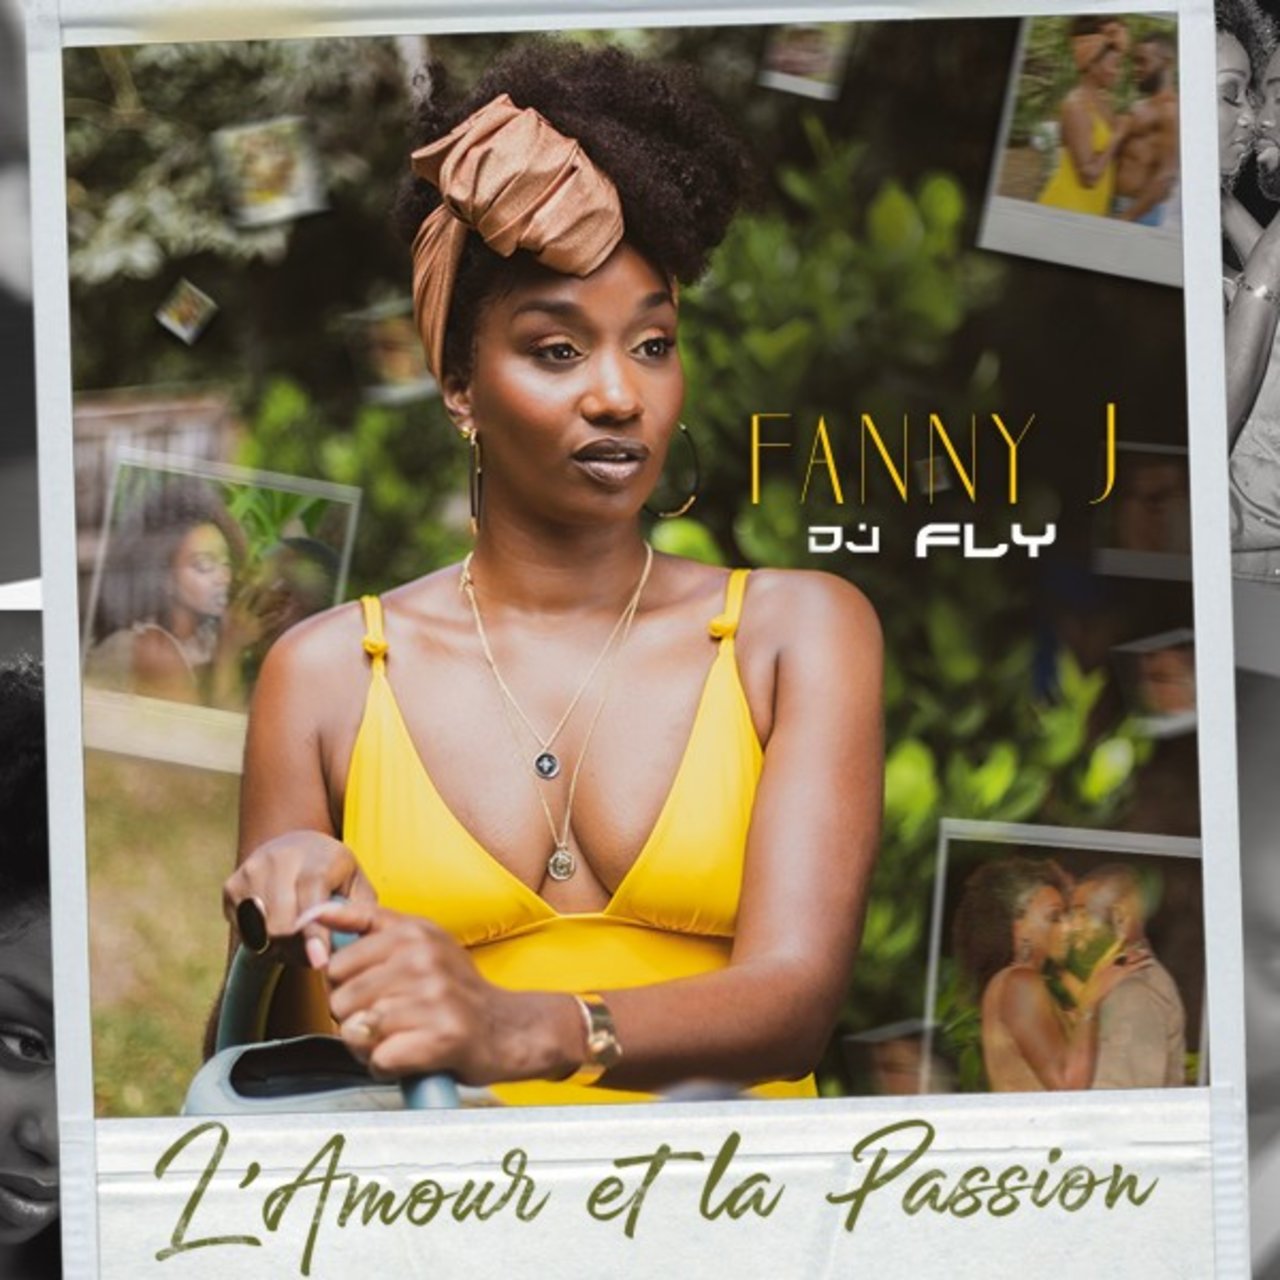 Fanny J - L'amour Et La Passion (ft. DJ Fly) (Cover)